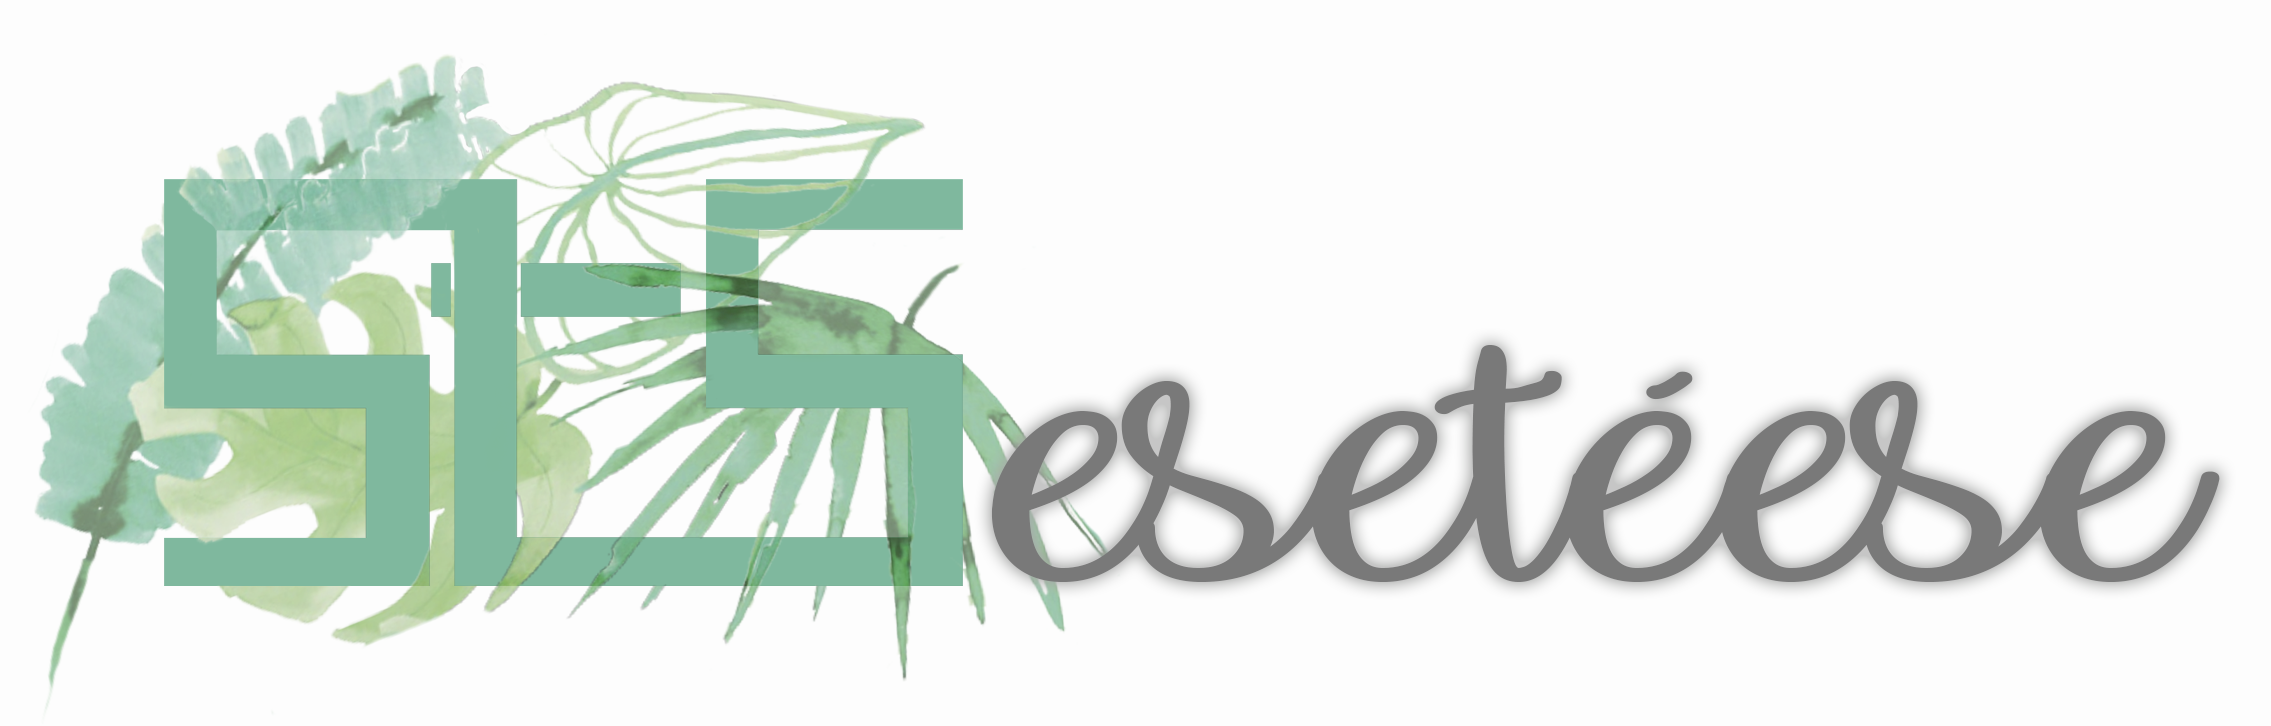 ESETEESE.COM